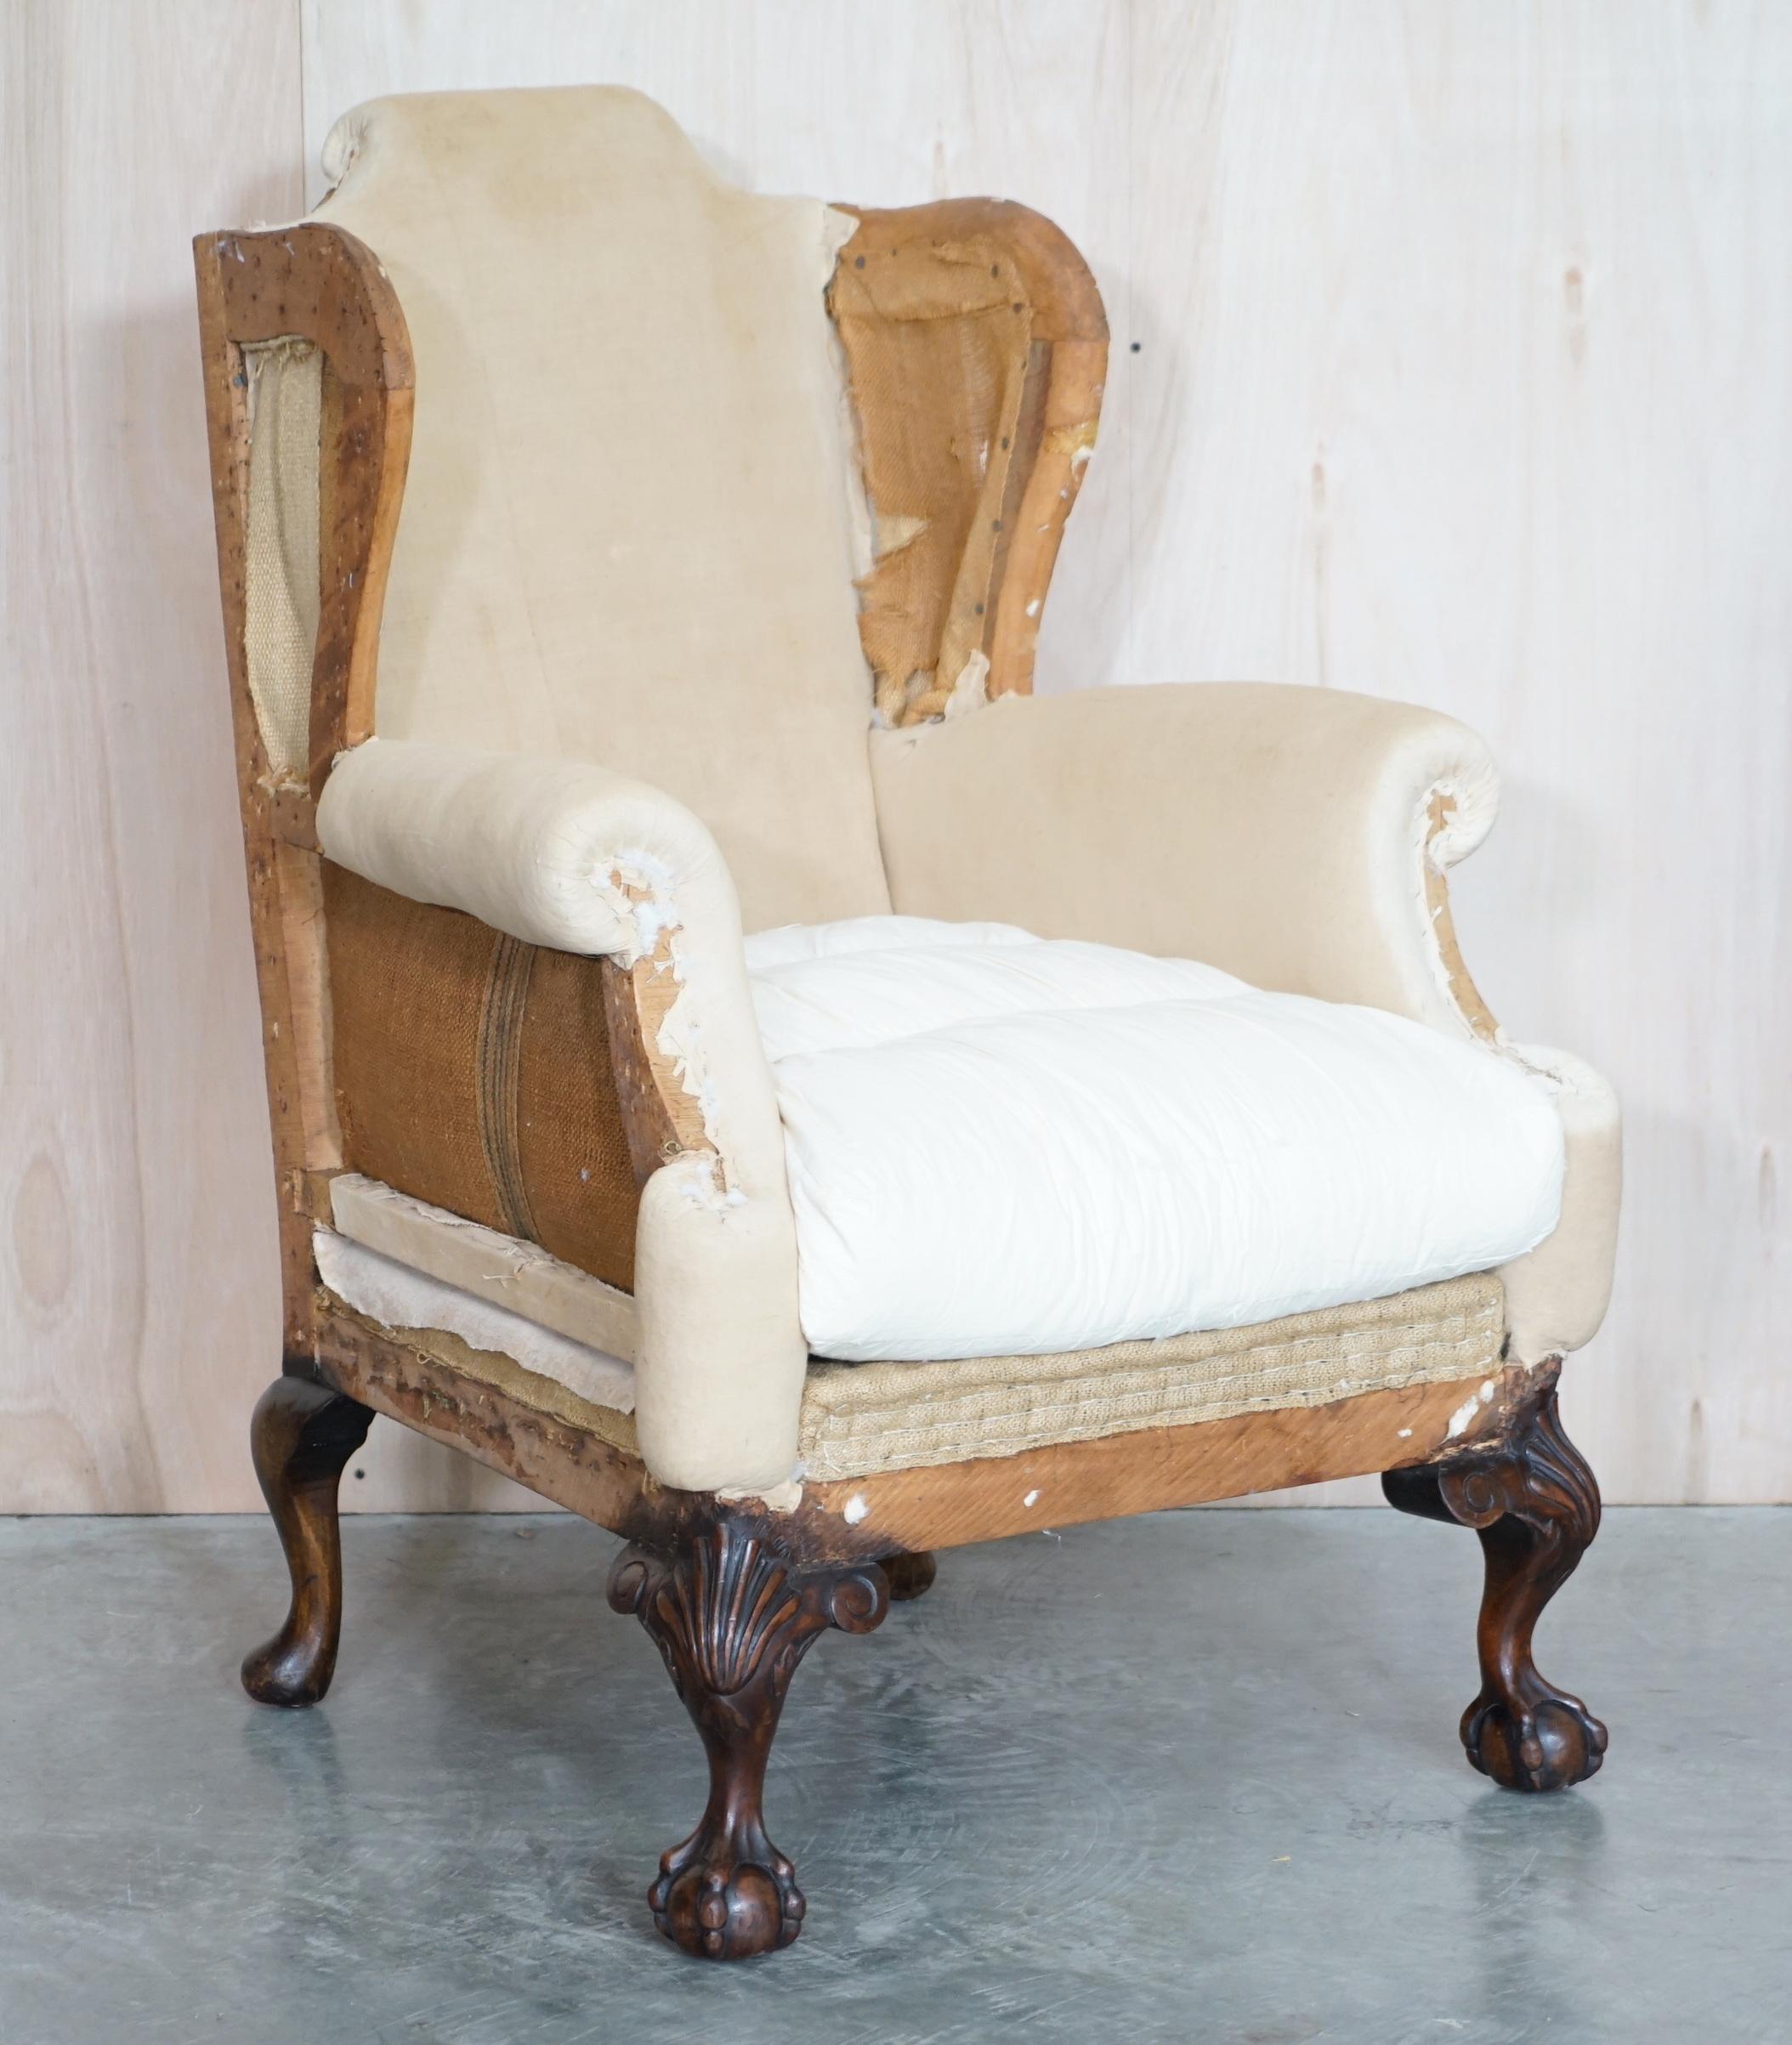 Nous sommes ravis d'offrir à la vente cette exquise paire de fauteuils Wingback victoriens anciens vers 1860, déconstruits, avec des pieds griffes et boules de style géorgien ornementalement sculptés.

Cette paire a été professionnellement décapée